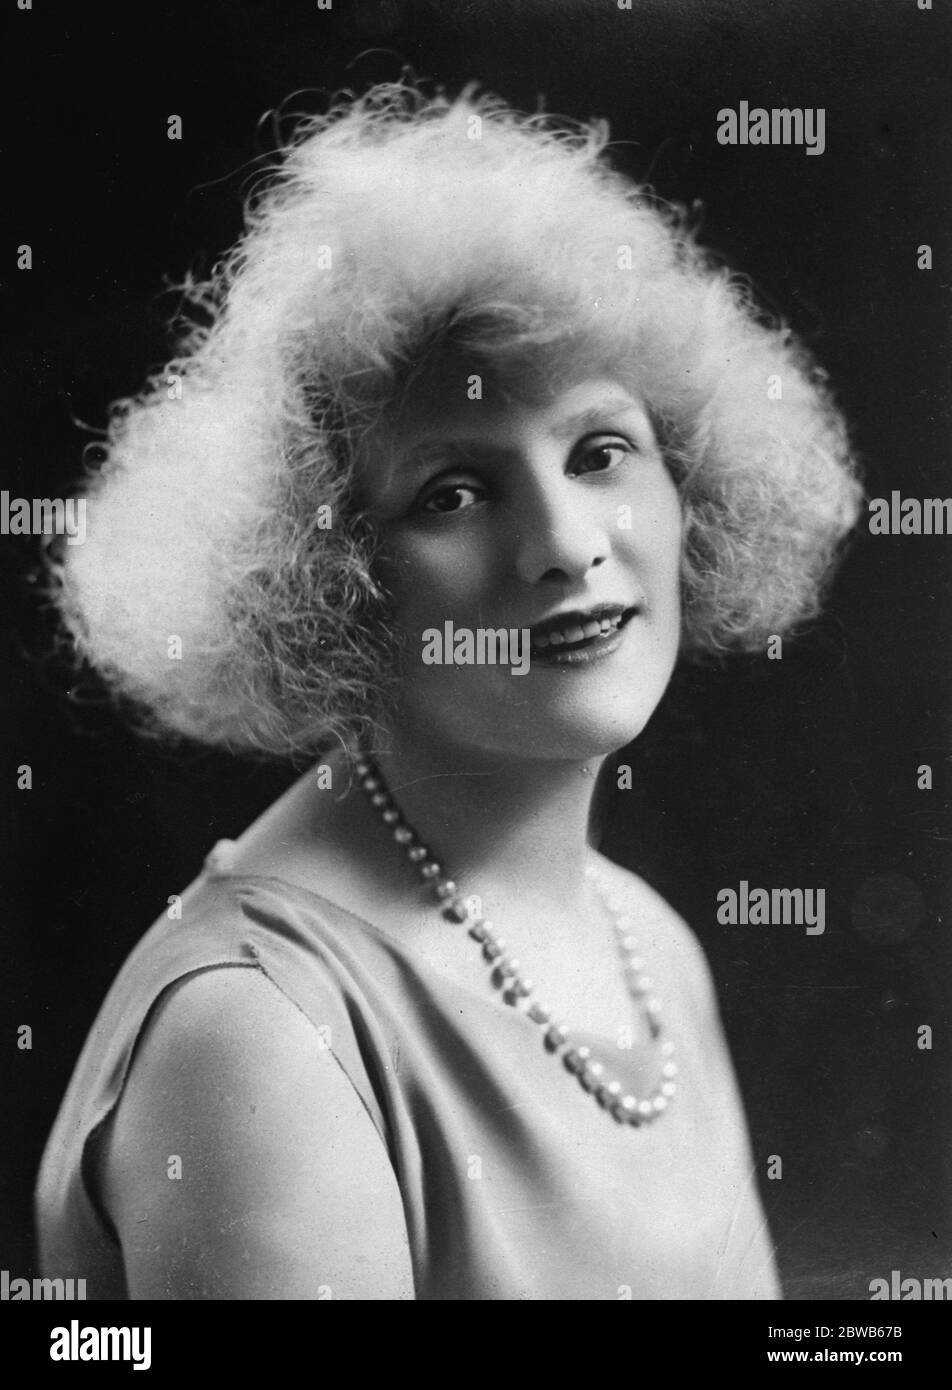 Berühmte französische Revue-Star für die Midnight Follies . Ein neues Porträt von Mlle Parisys , dem berühmten französischen Revue-Star , der nächste Woche am 28. Oktober 1924 mit den "Midnight Follies" in London erscheinen wird Stockfoto